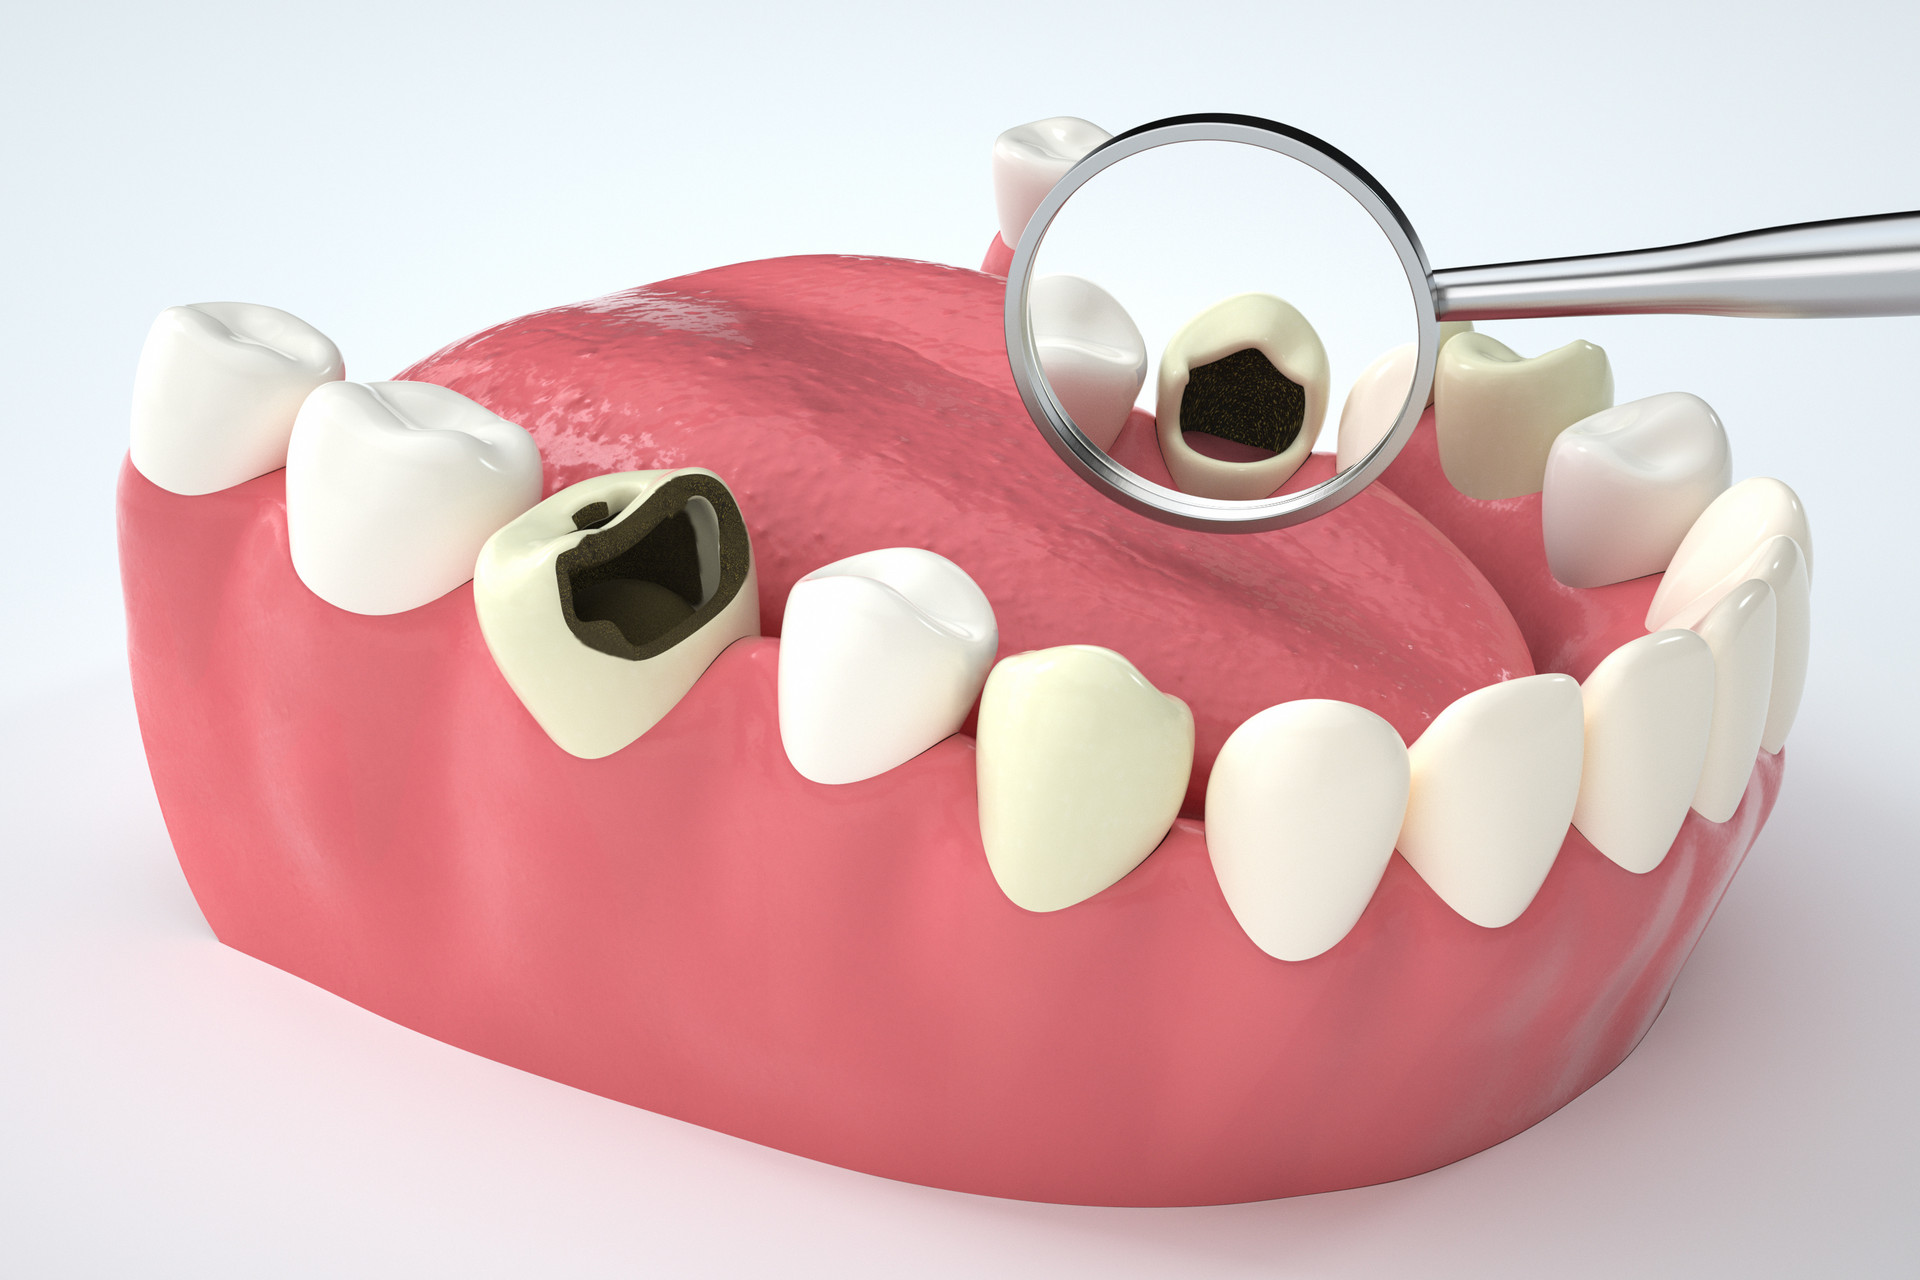 Clin Oral Investig：纳米<font color="red">羟基</font>磷灰石能预防龋齿吗？